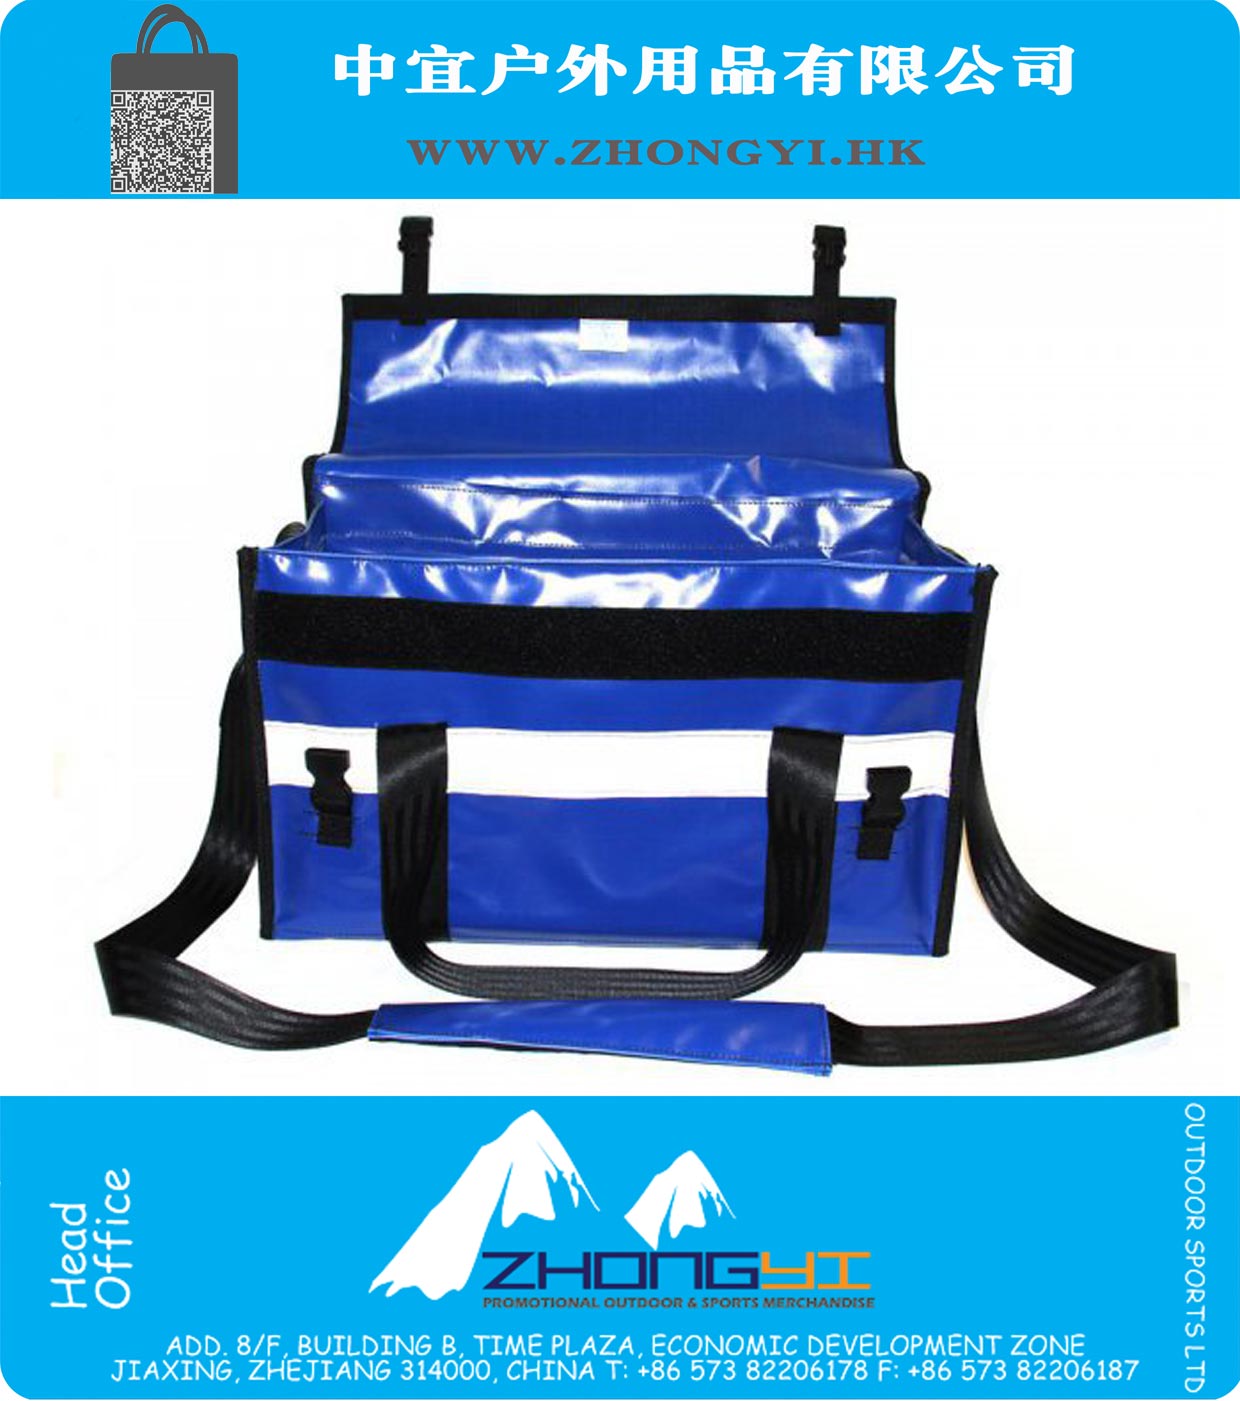 Blue PVC Rescue Bag